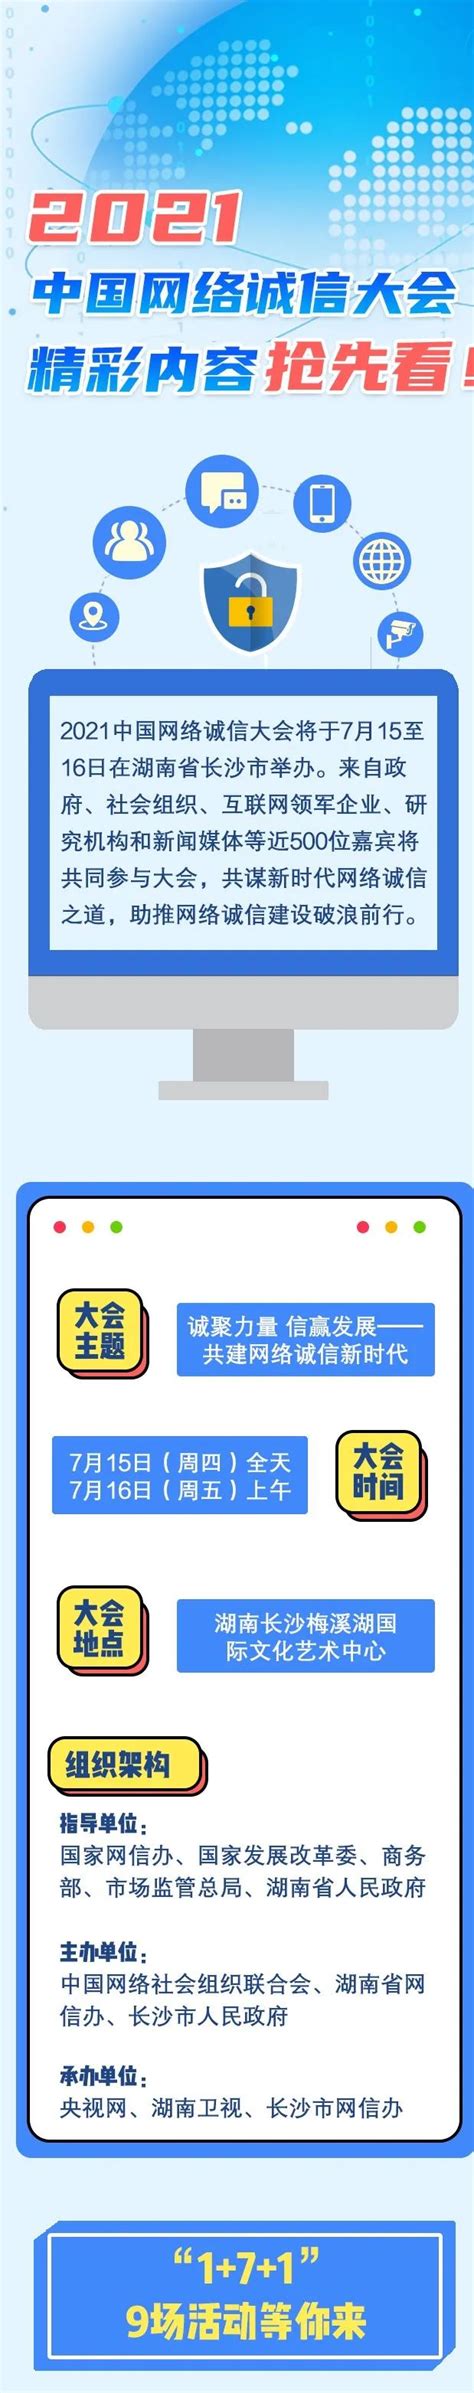 湘潭营销网站建设-企业官网制作-湘潭磐石网络科技有限公司